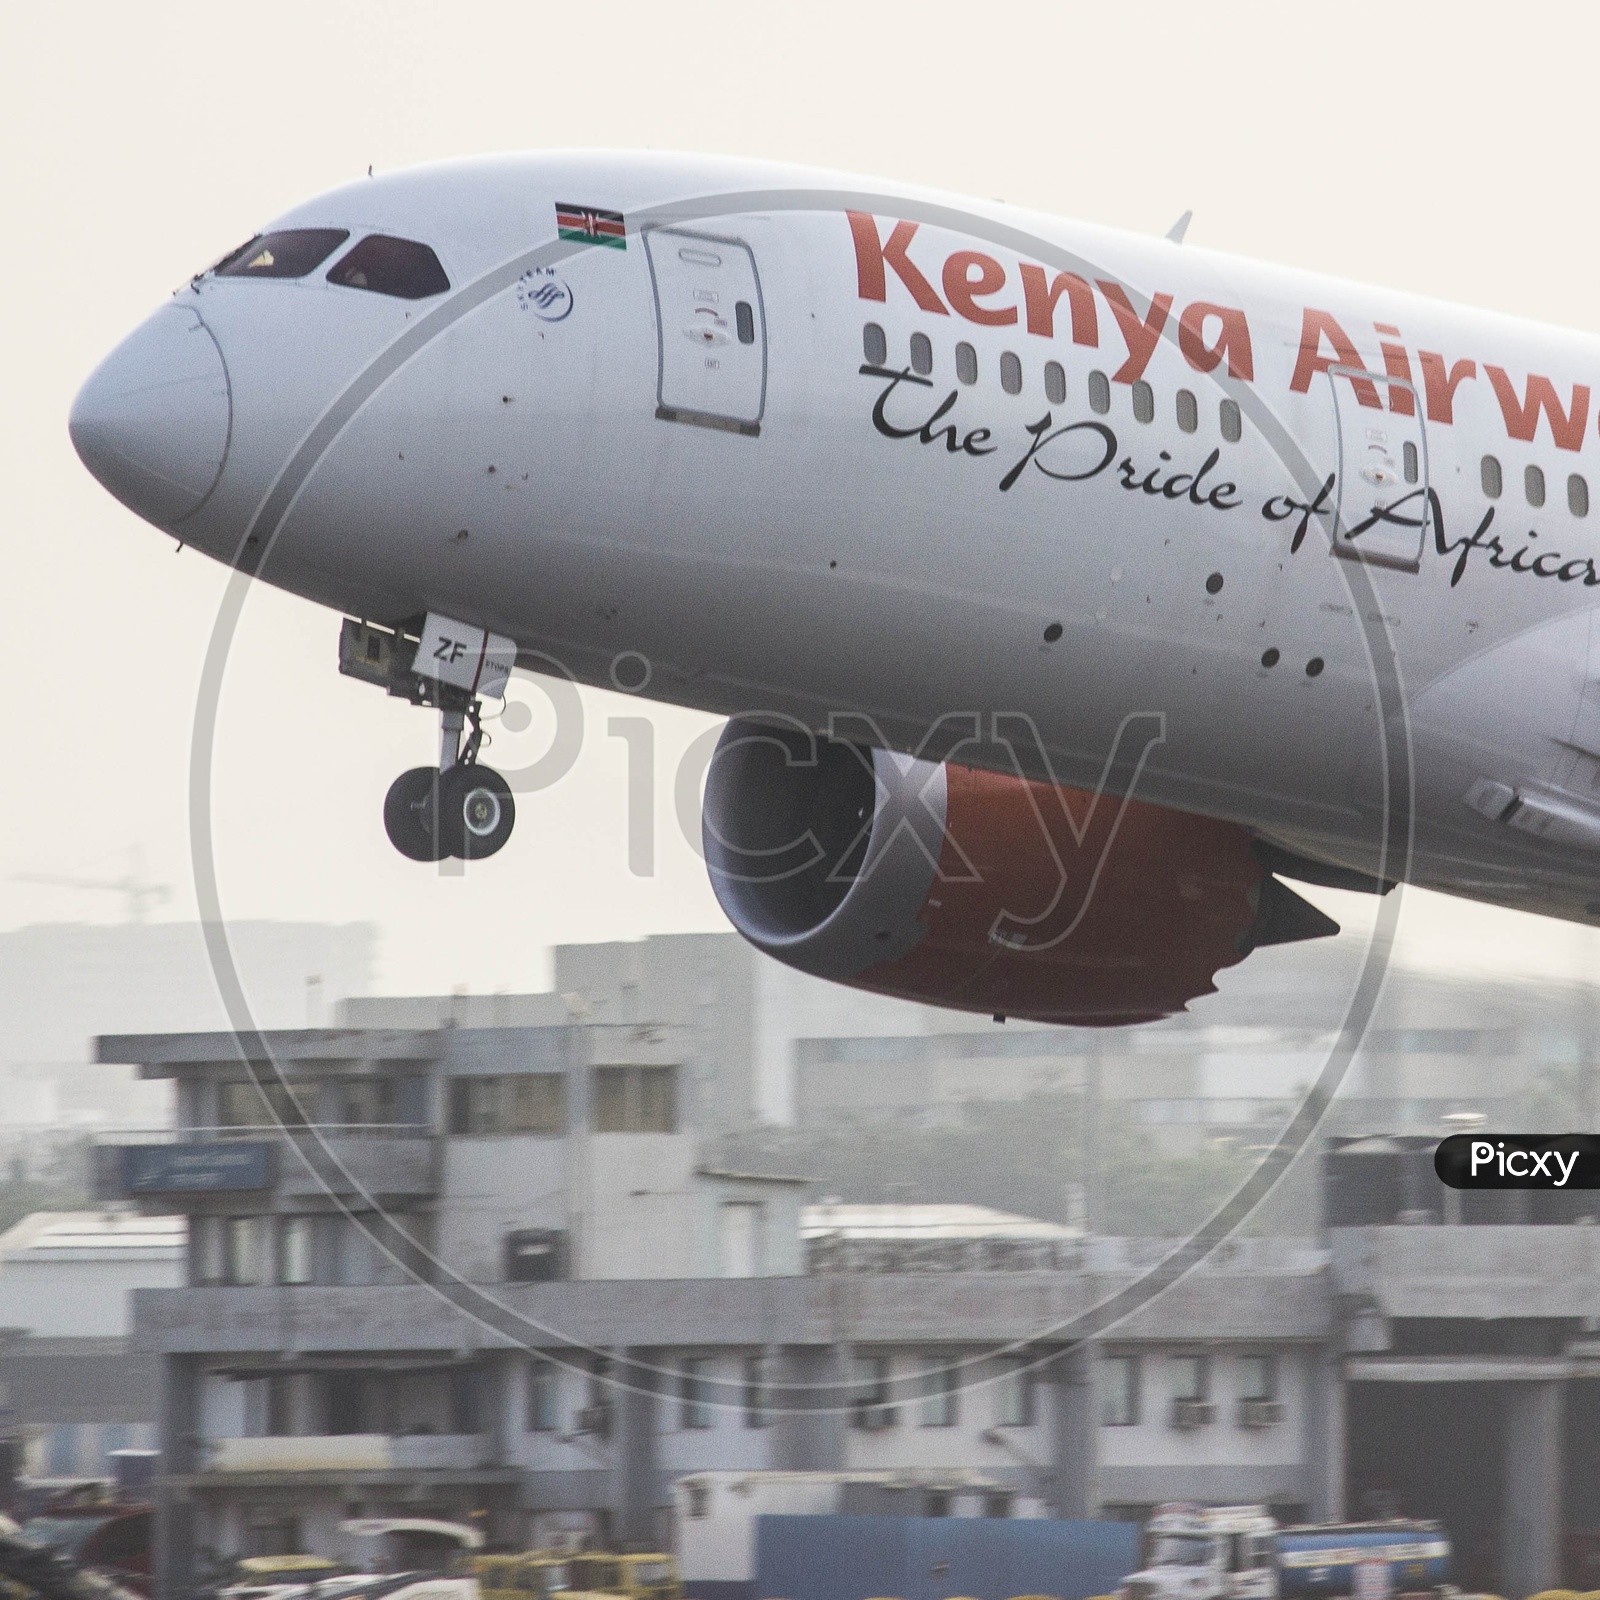 Kenya airways B787 taking off from mumbai for nairobi.